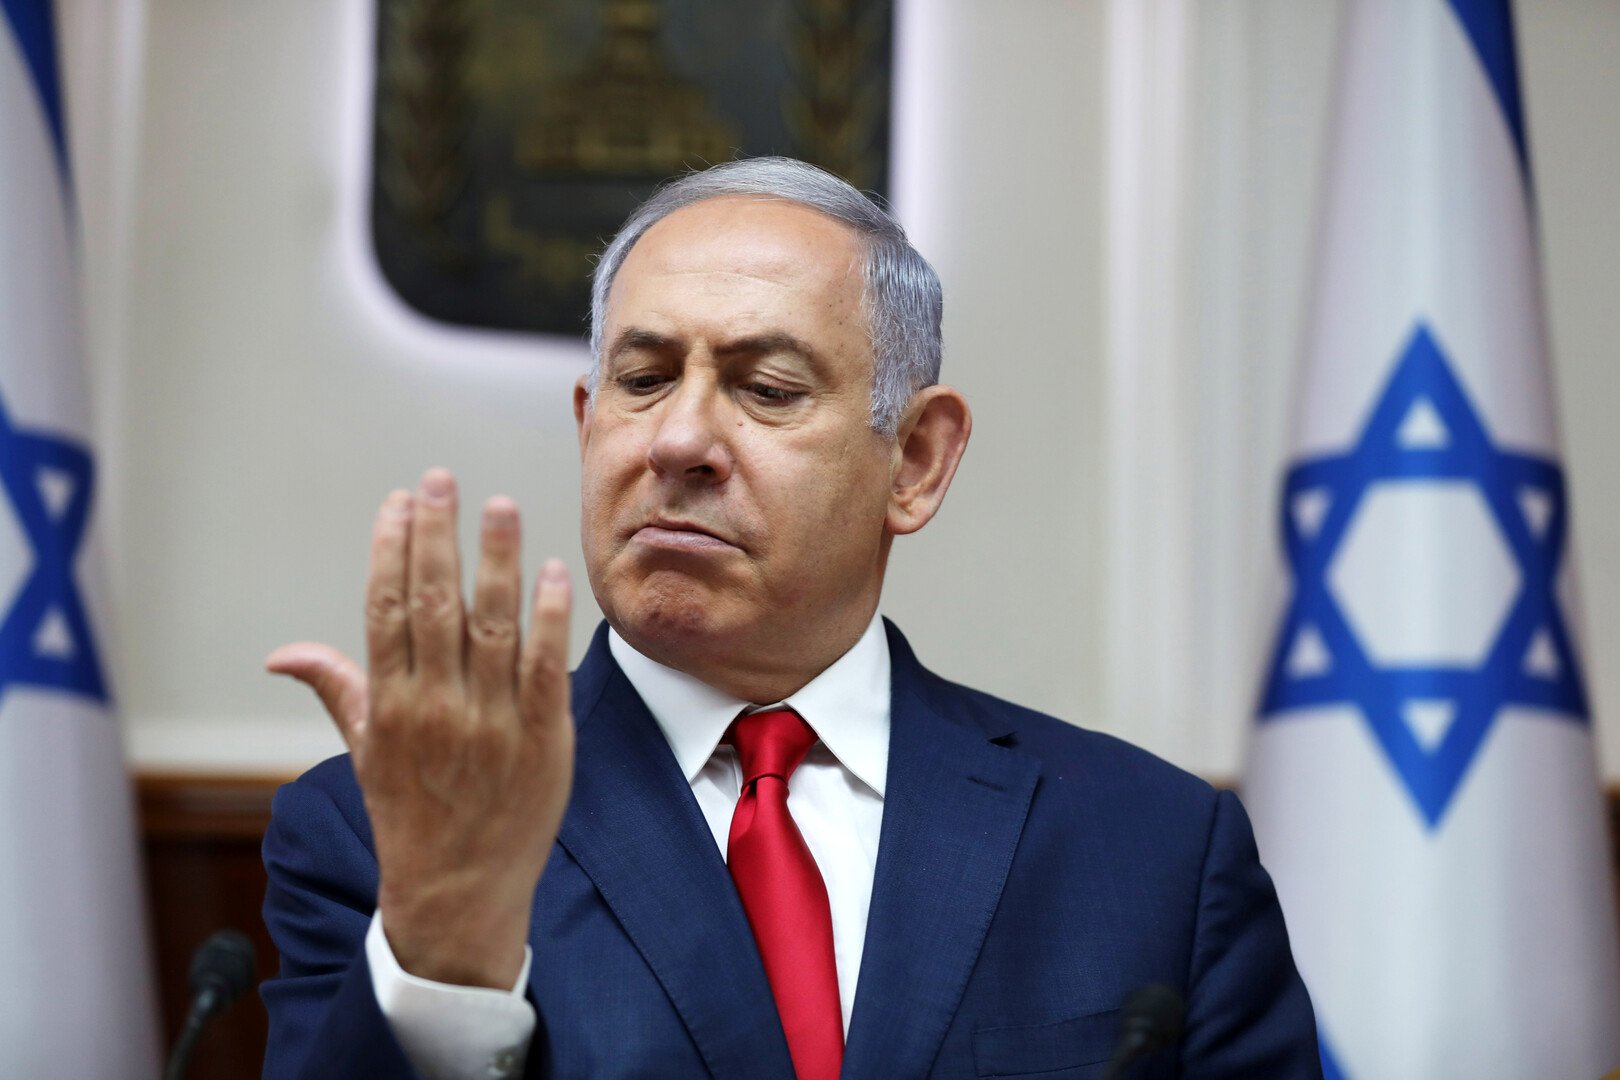 نتنياهو: مشاركة العرب في الحكومة تهدد أمن إسرائيل